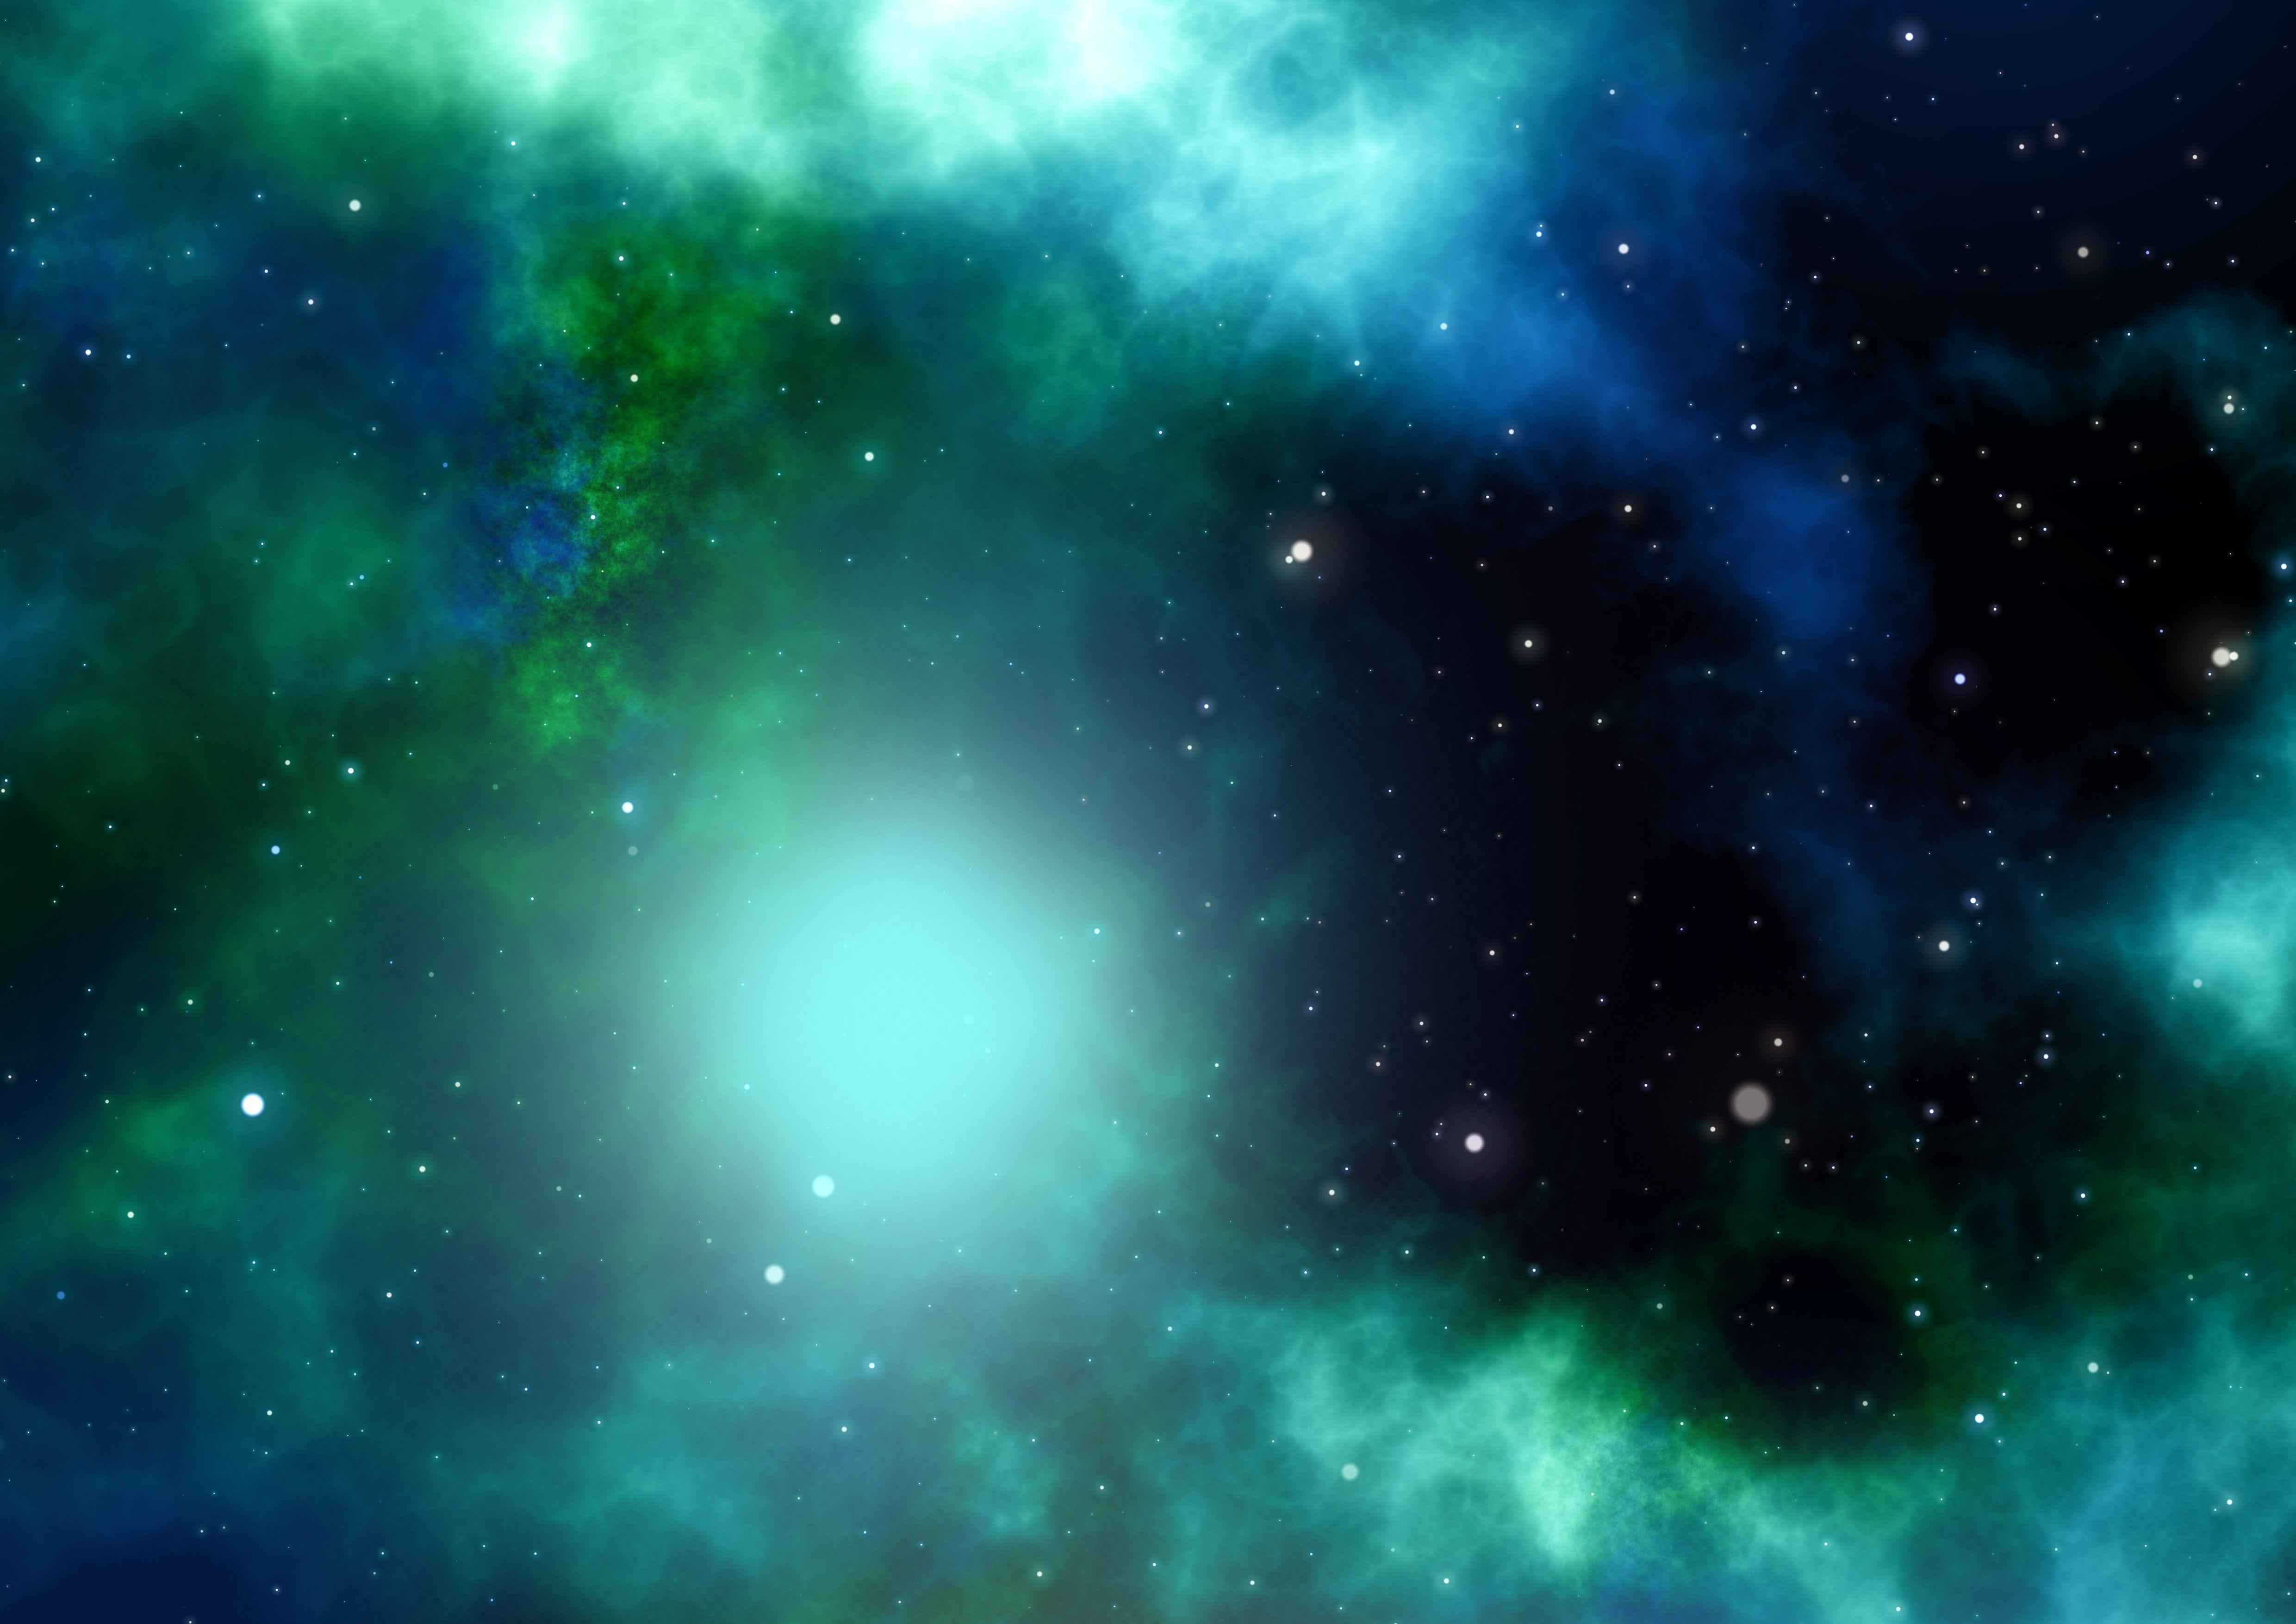 Hãy khám phá những hình nền độc đáo và đầy màu sắc của các vùng trời đang mơ mộng, được ghi lại bởi các thiết bị chuyên dụng. Hình nền Green and Blue Galaxy sẽ đem đến cho bạn cảm giác chân thật như được đắm mình trong một không gian tuyệt đẹp.